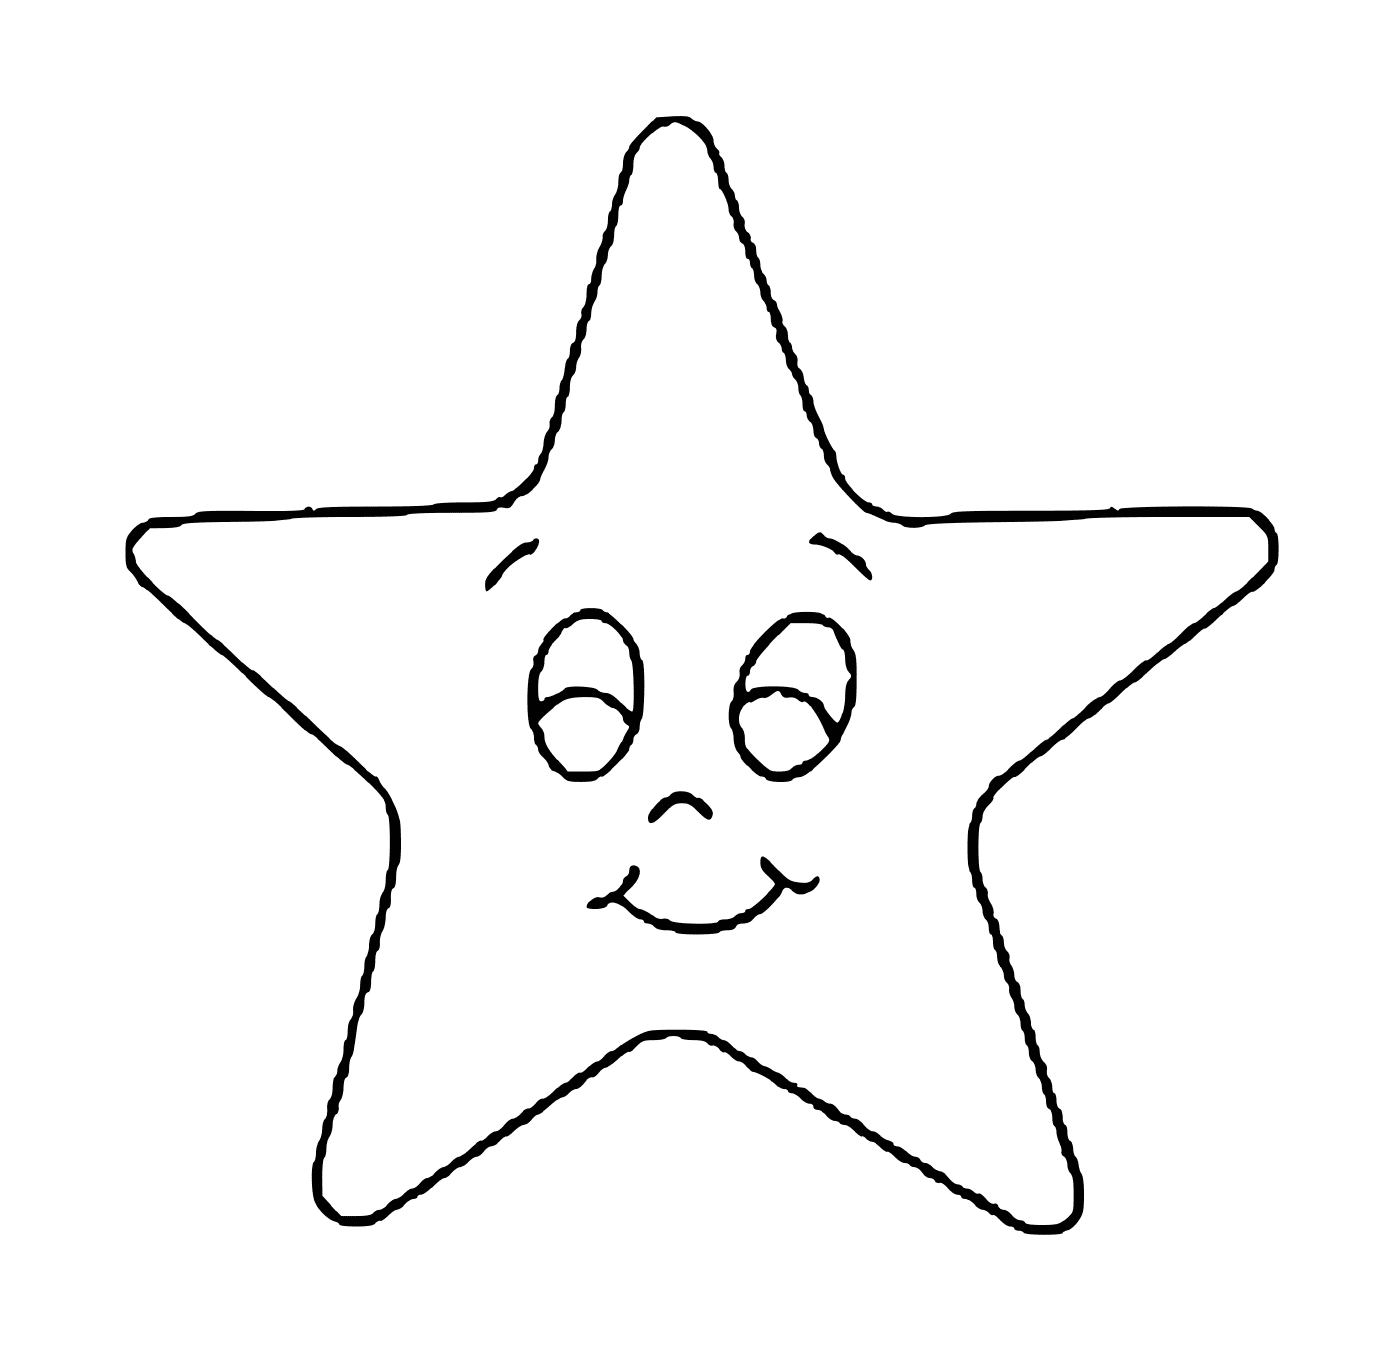  Una estrella con una cara sonriente 